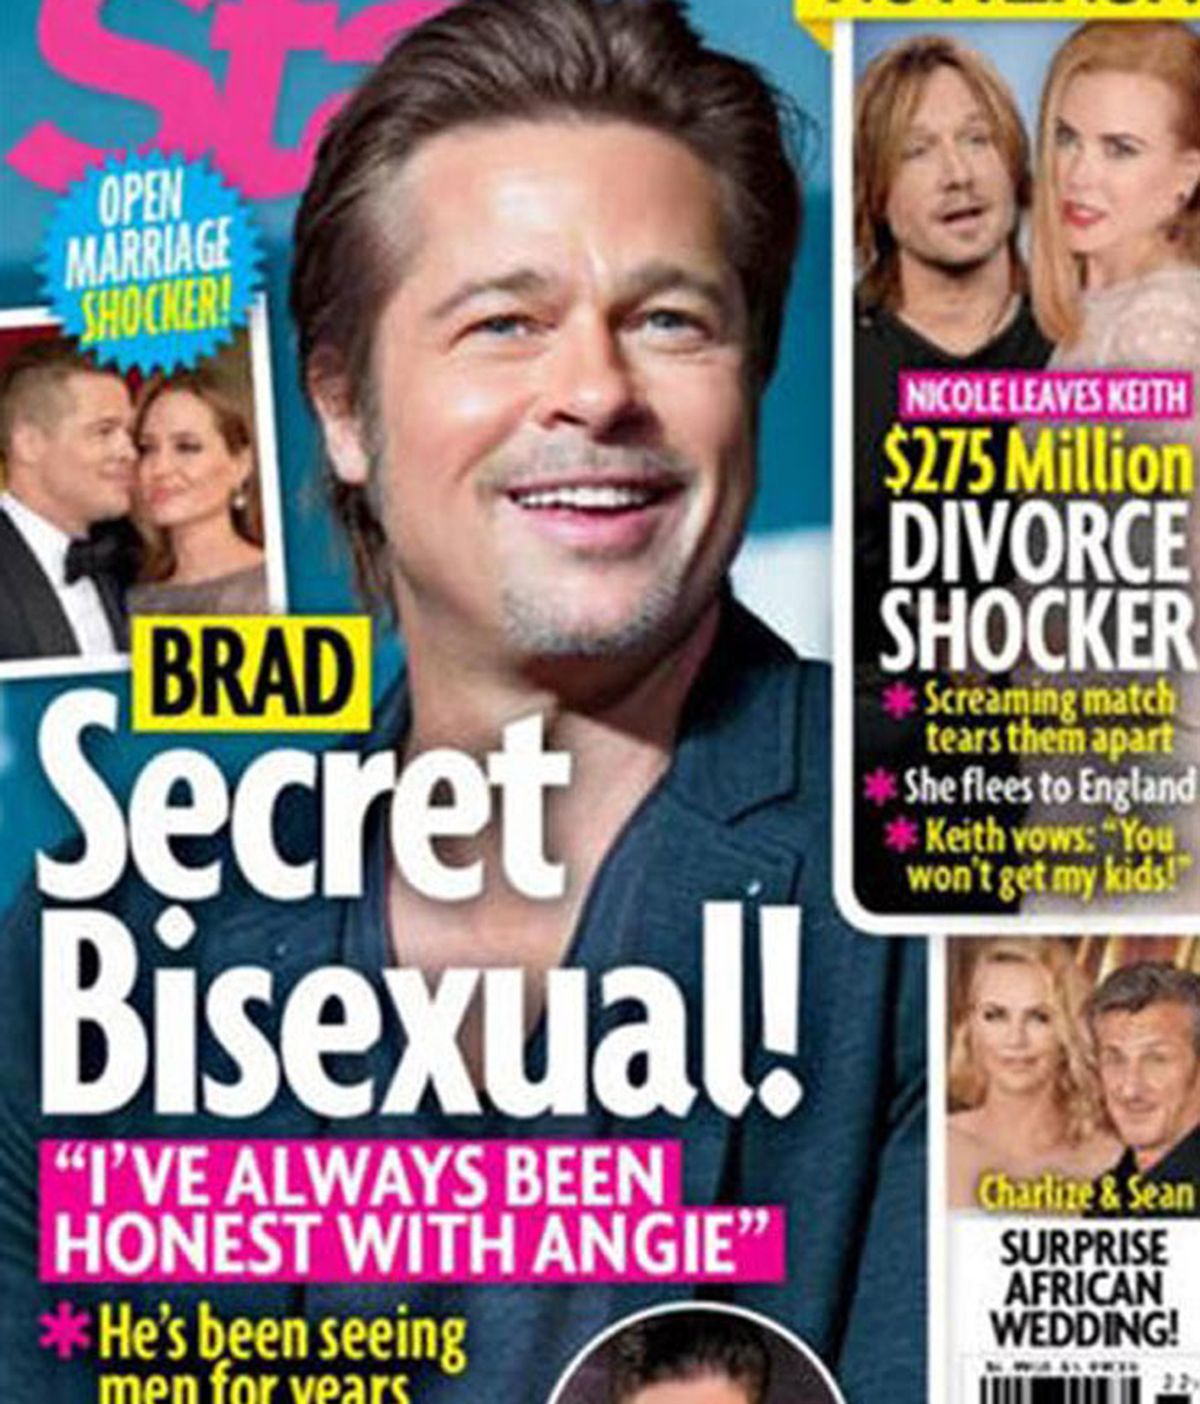 Brad bisexual